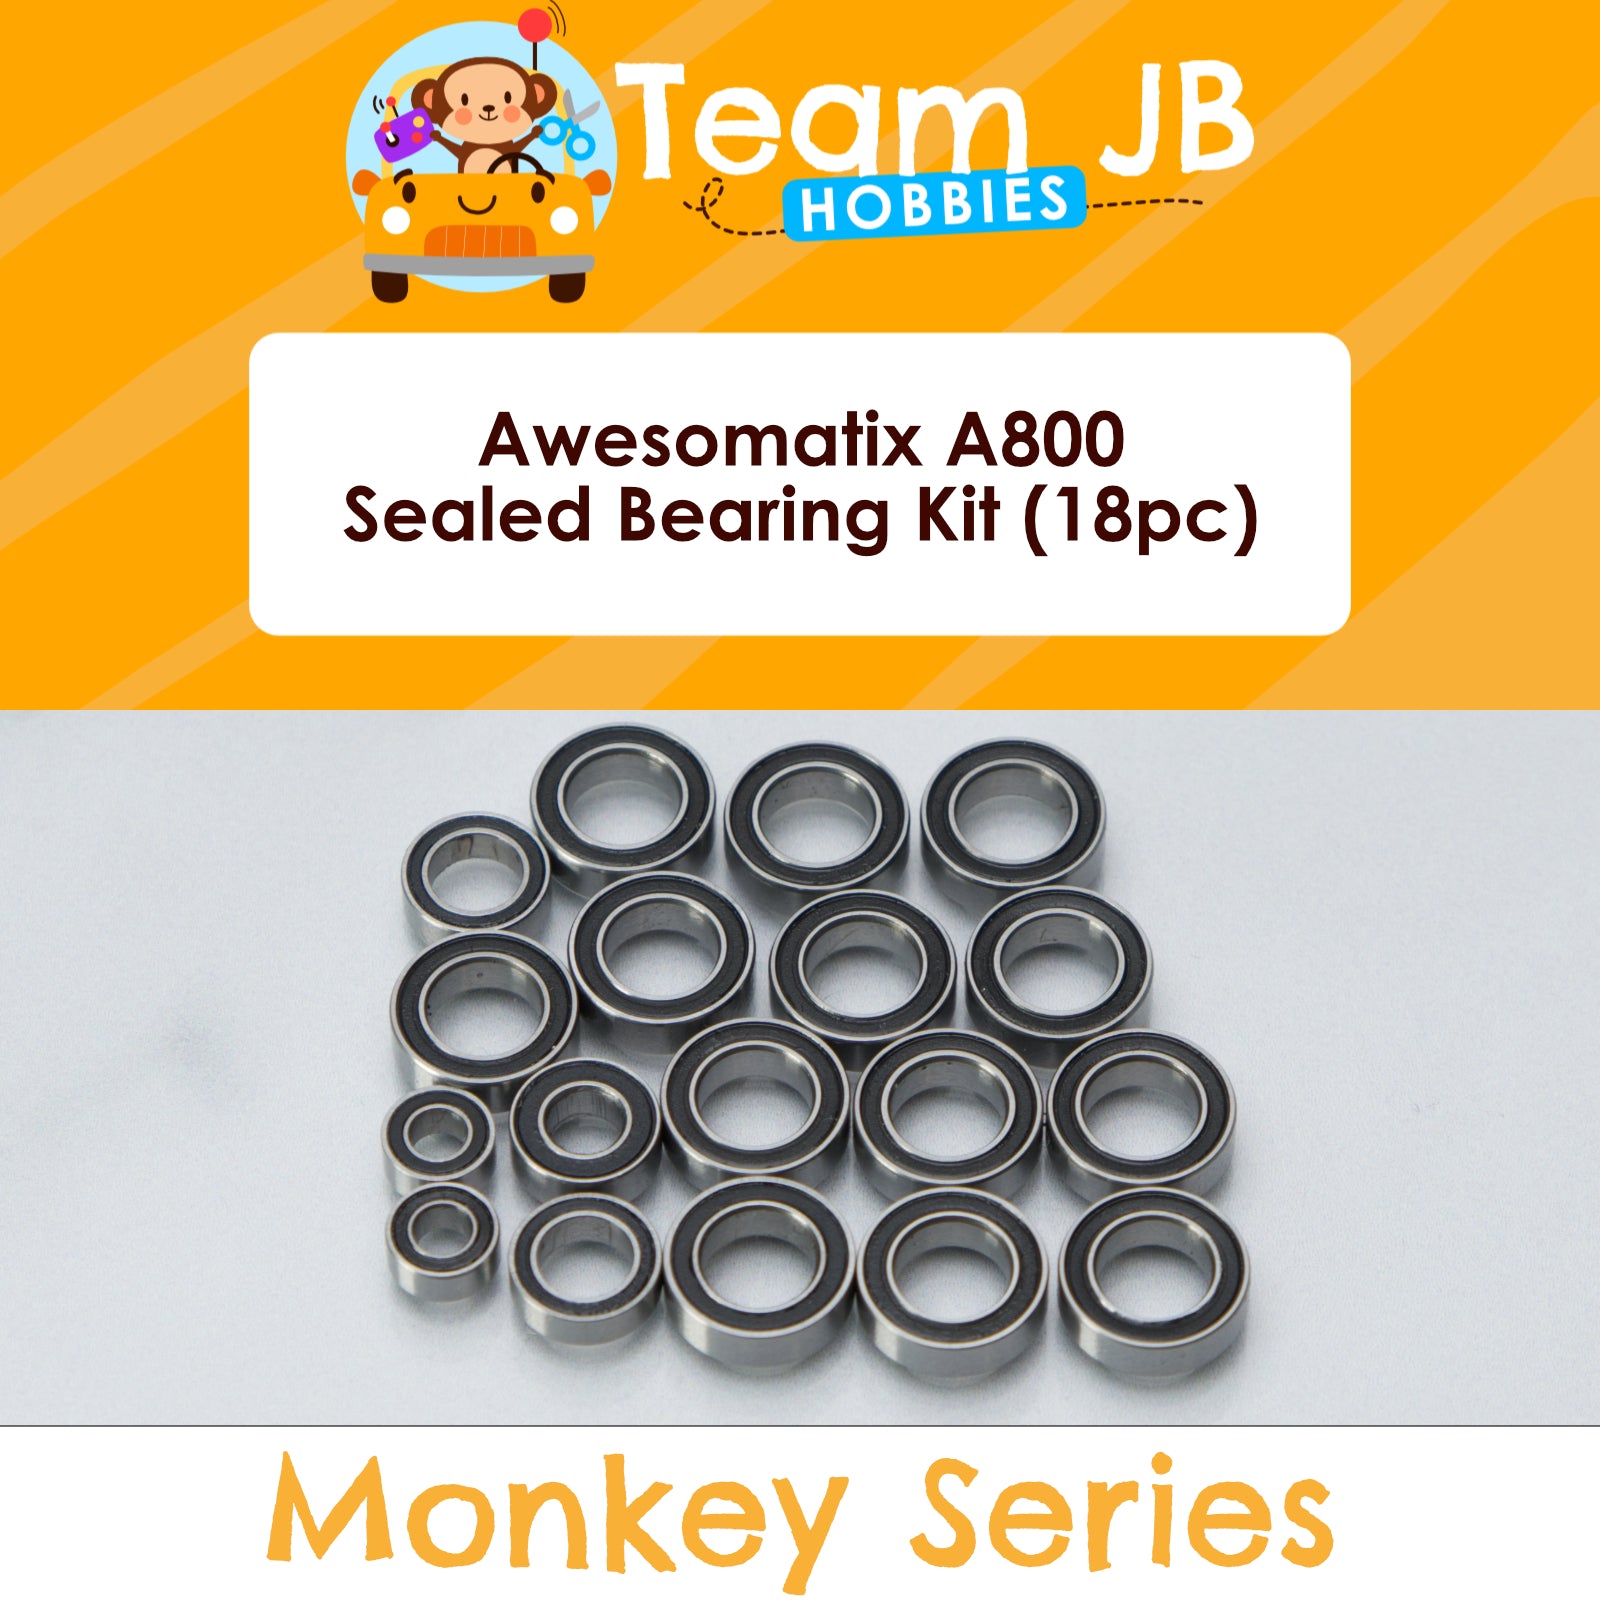 Awesomatix A800 - Sealed Bearing Kit